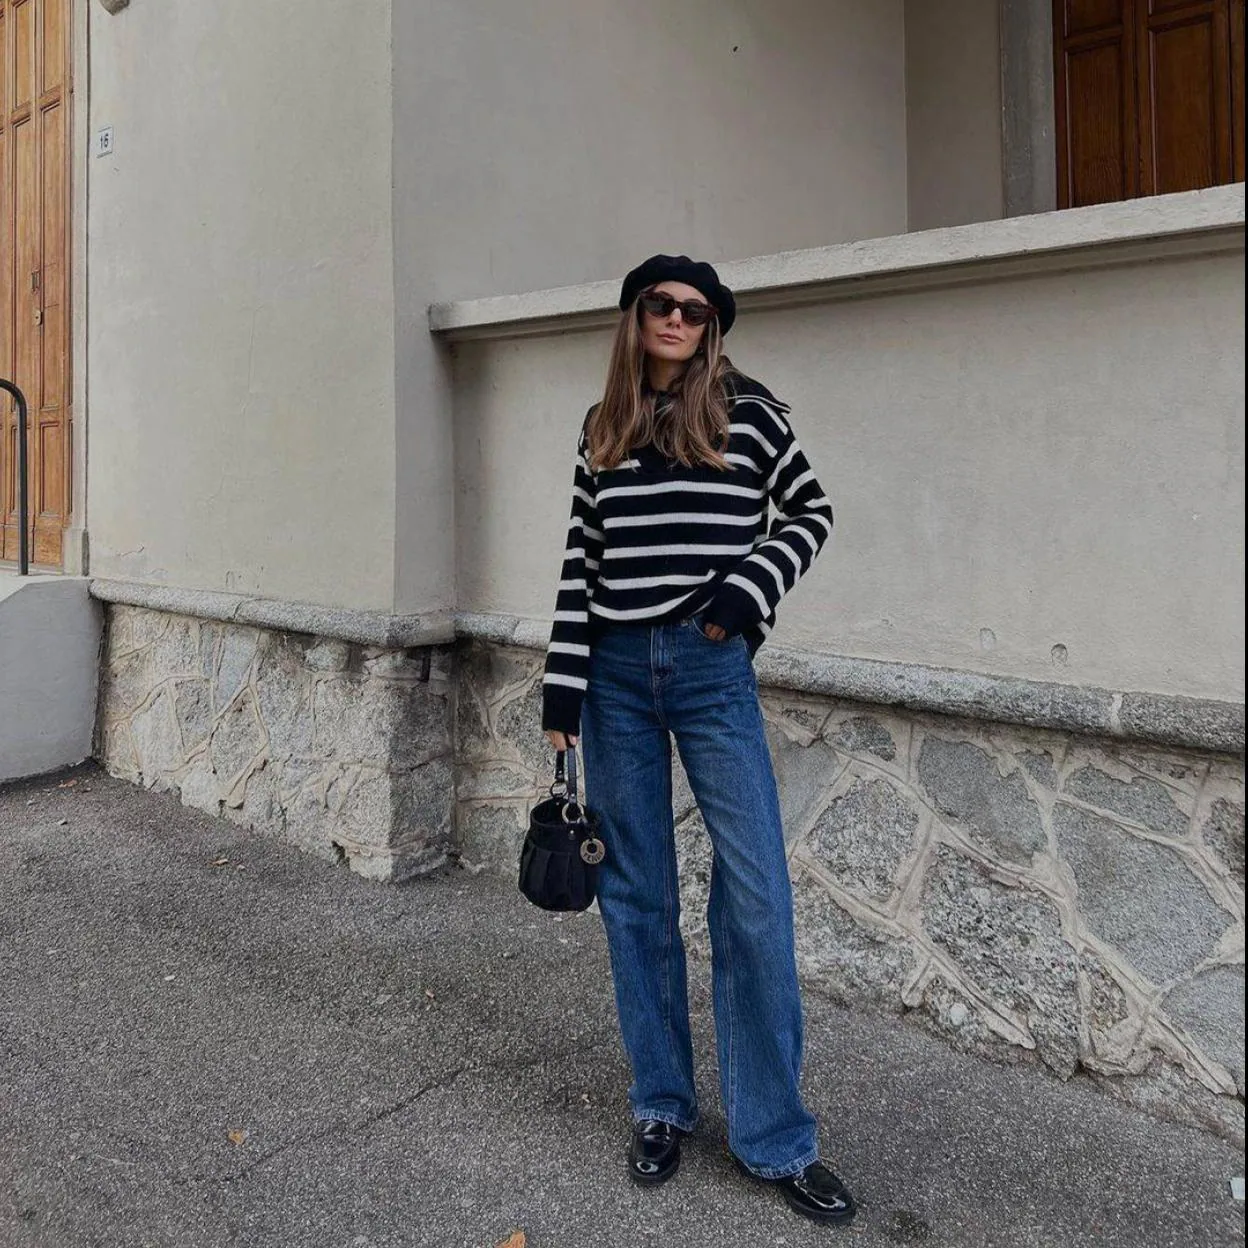 MODA: Camisetas de rayas para un look de estilo parisino que encontrarás en rebajas de Massimo Dutti Mujer Hoy